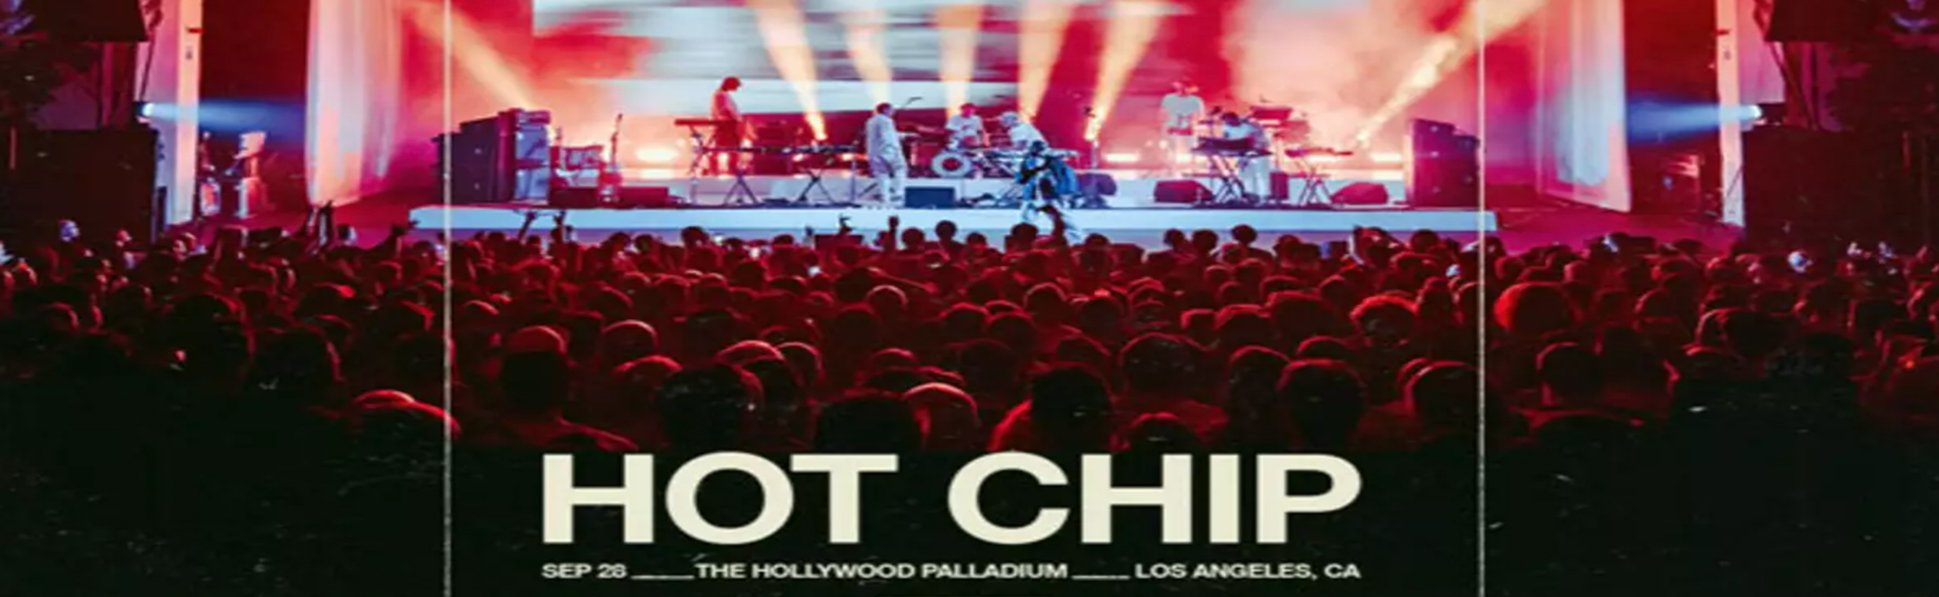 Hot Chip at Hollywood Palladium